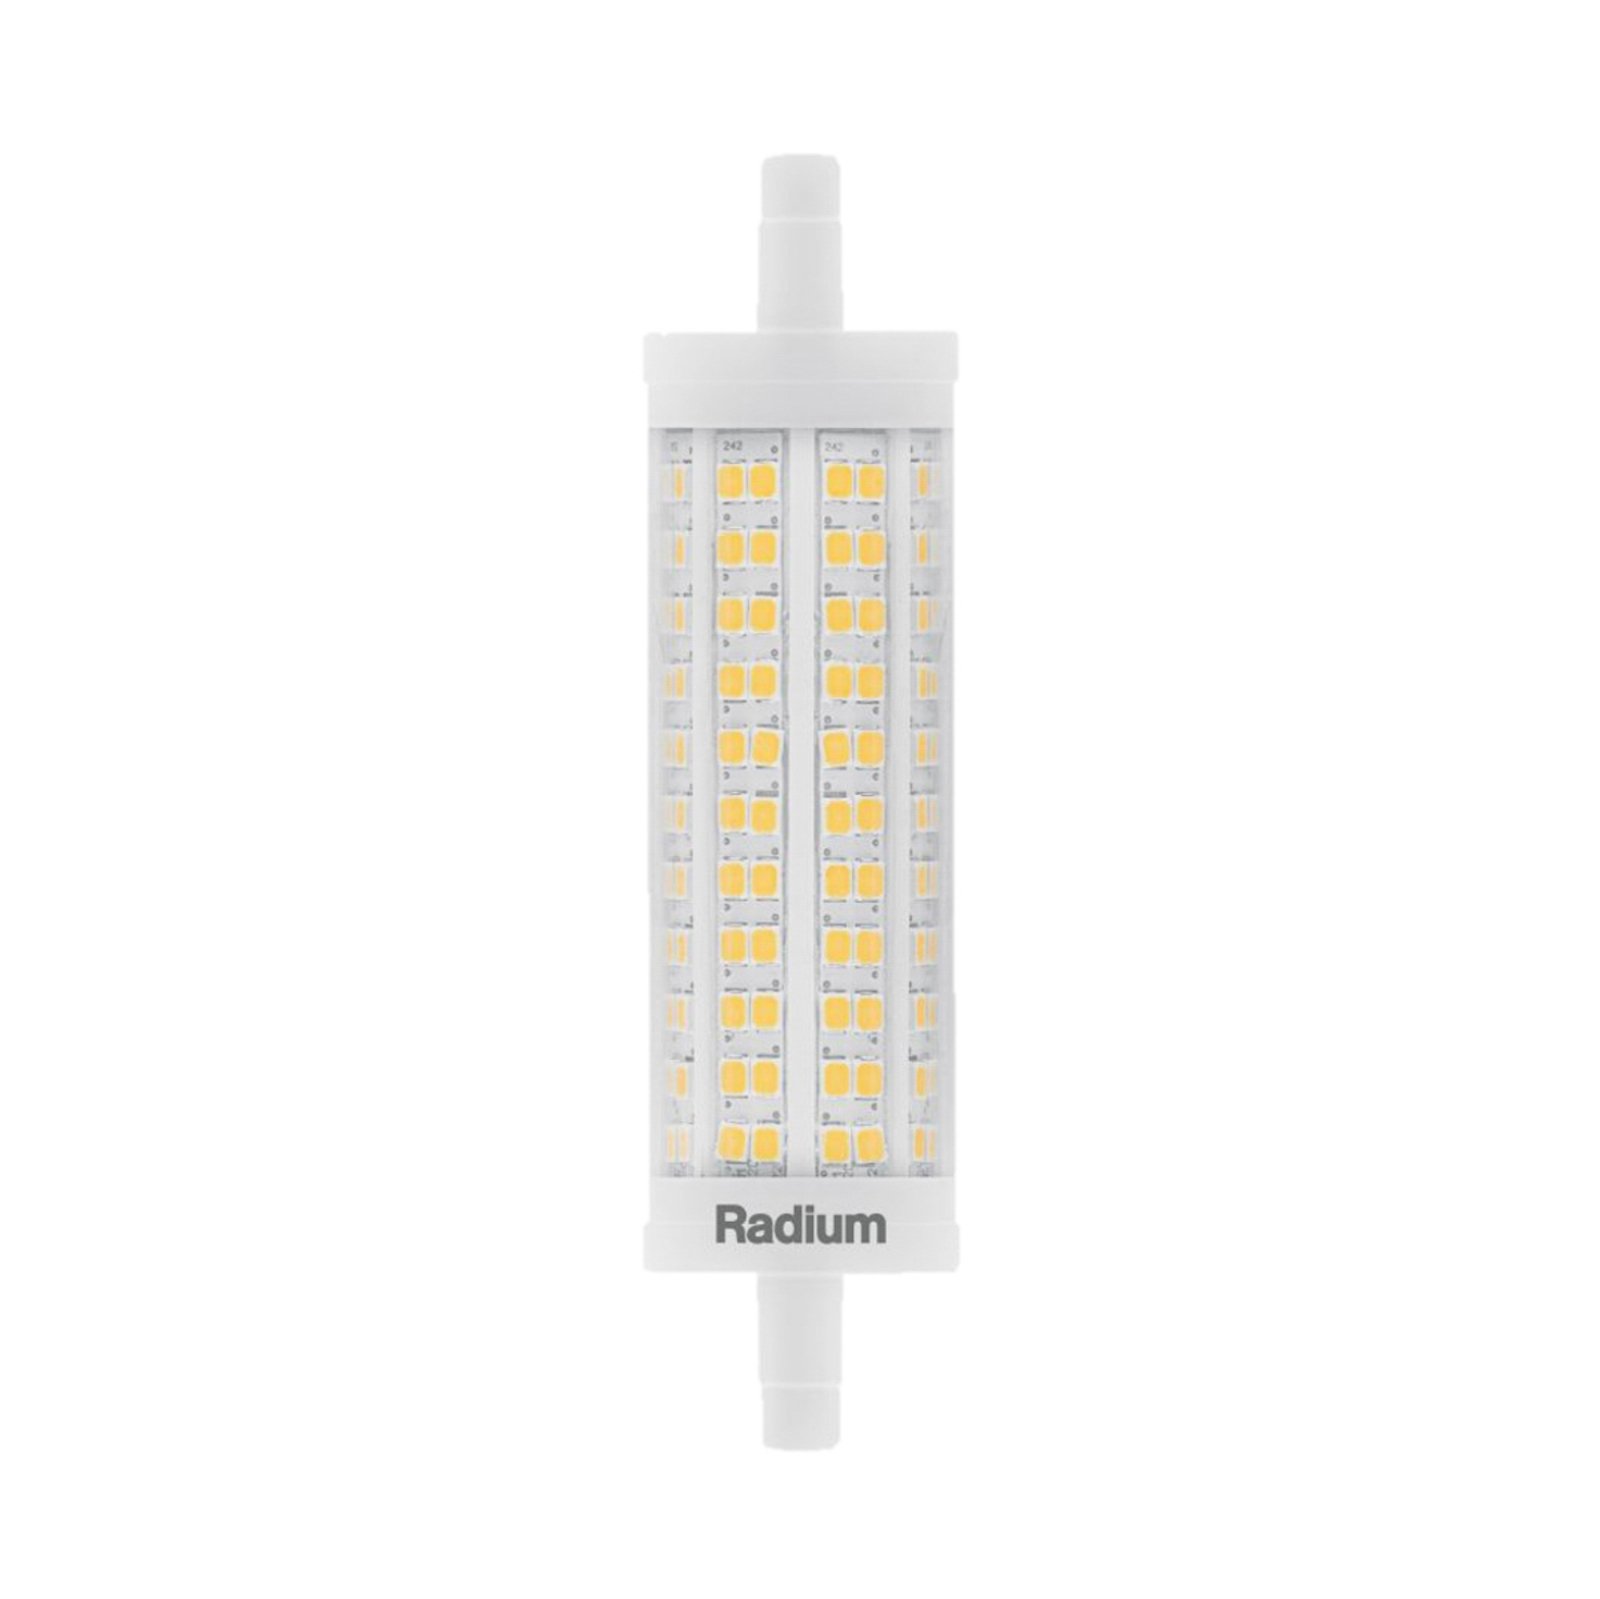 Radium LED Essence prętowa R7s 17,5W 2452lm